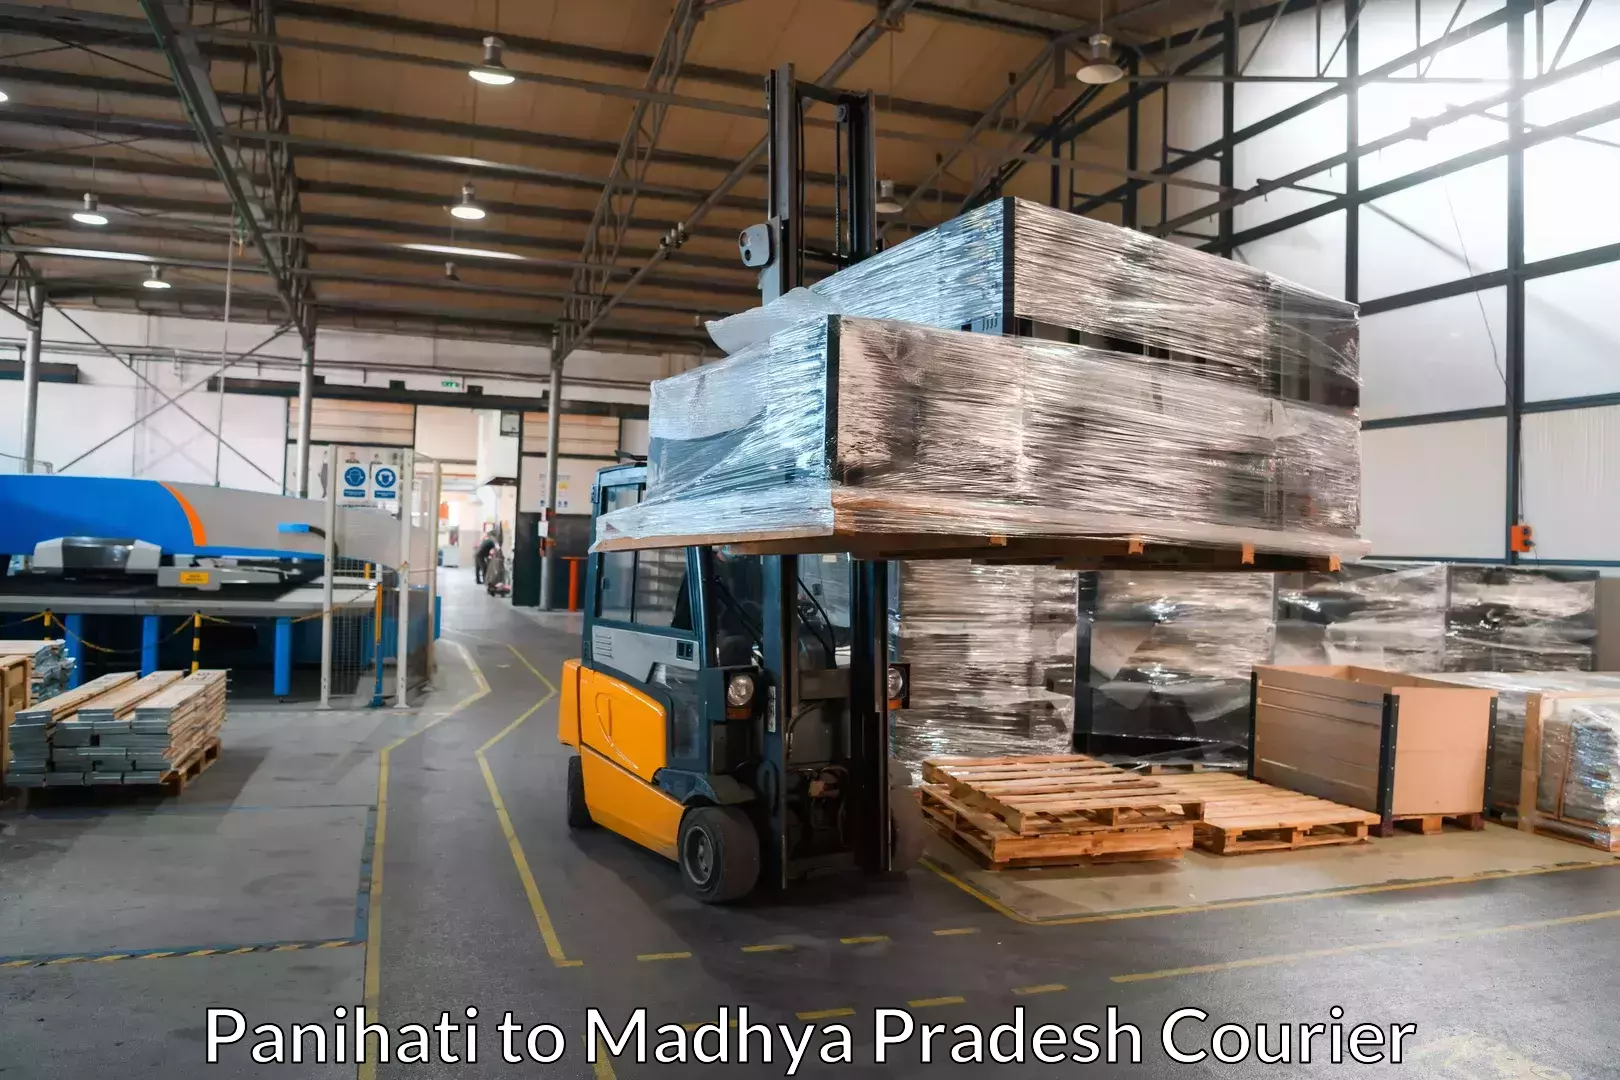 Furniture transport experts Panihati to Madhya Pradesh